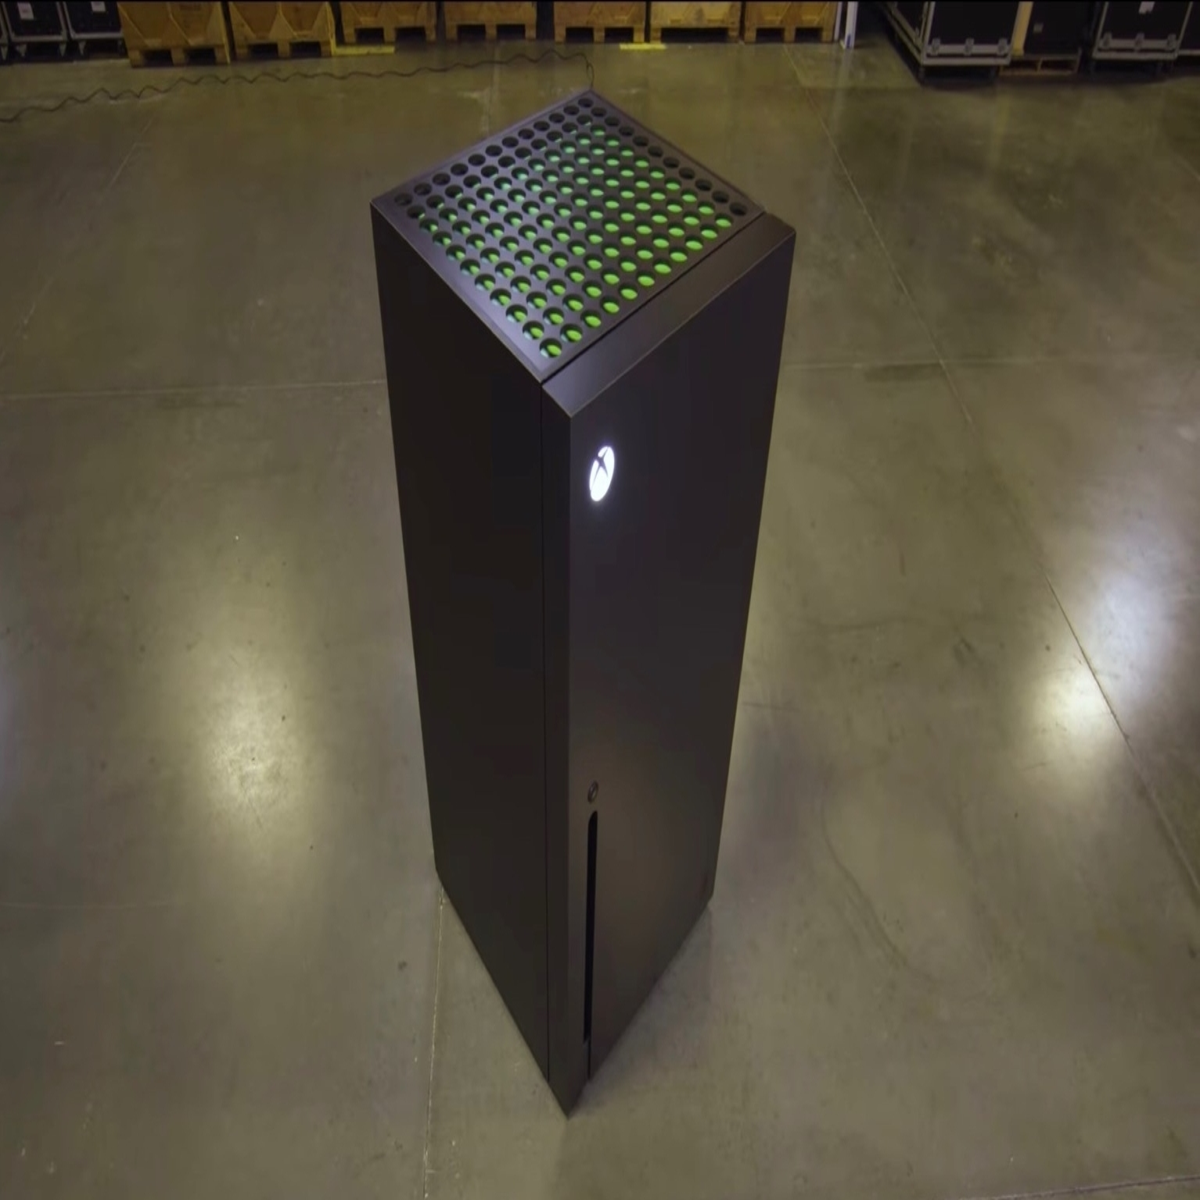 Microsoft ha realizzato un frigo a forma di Xbox